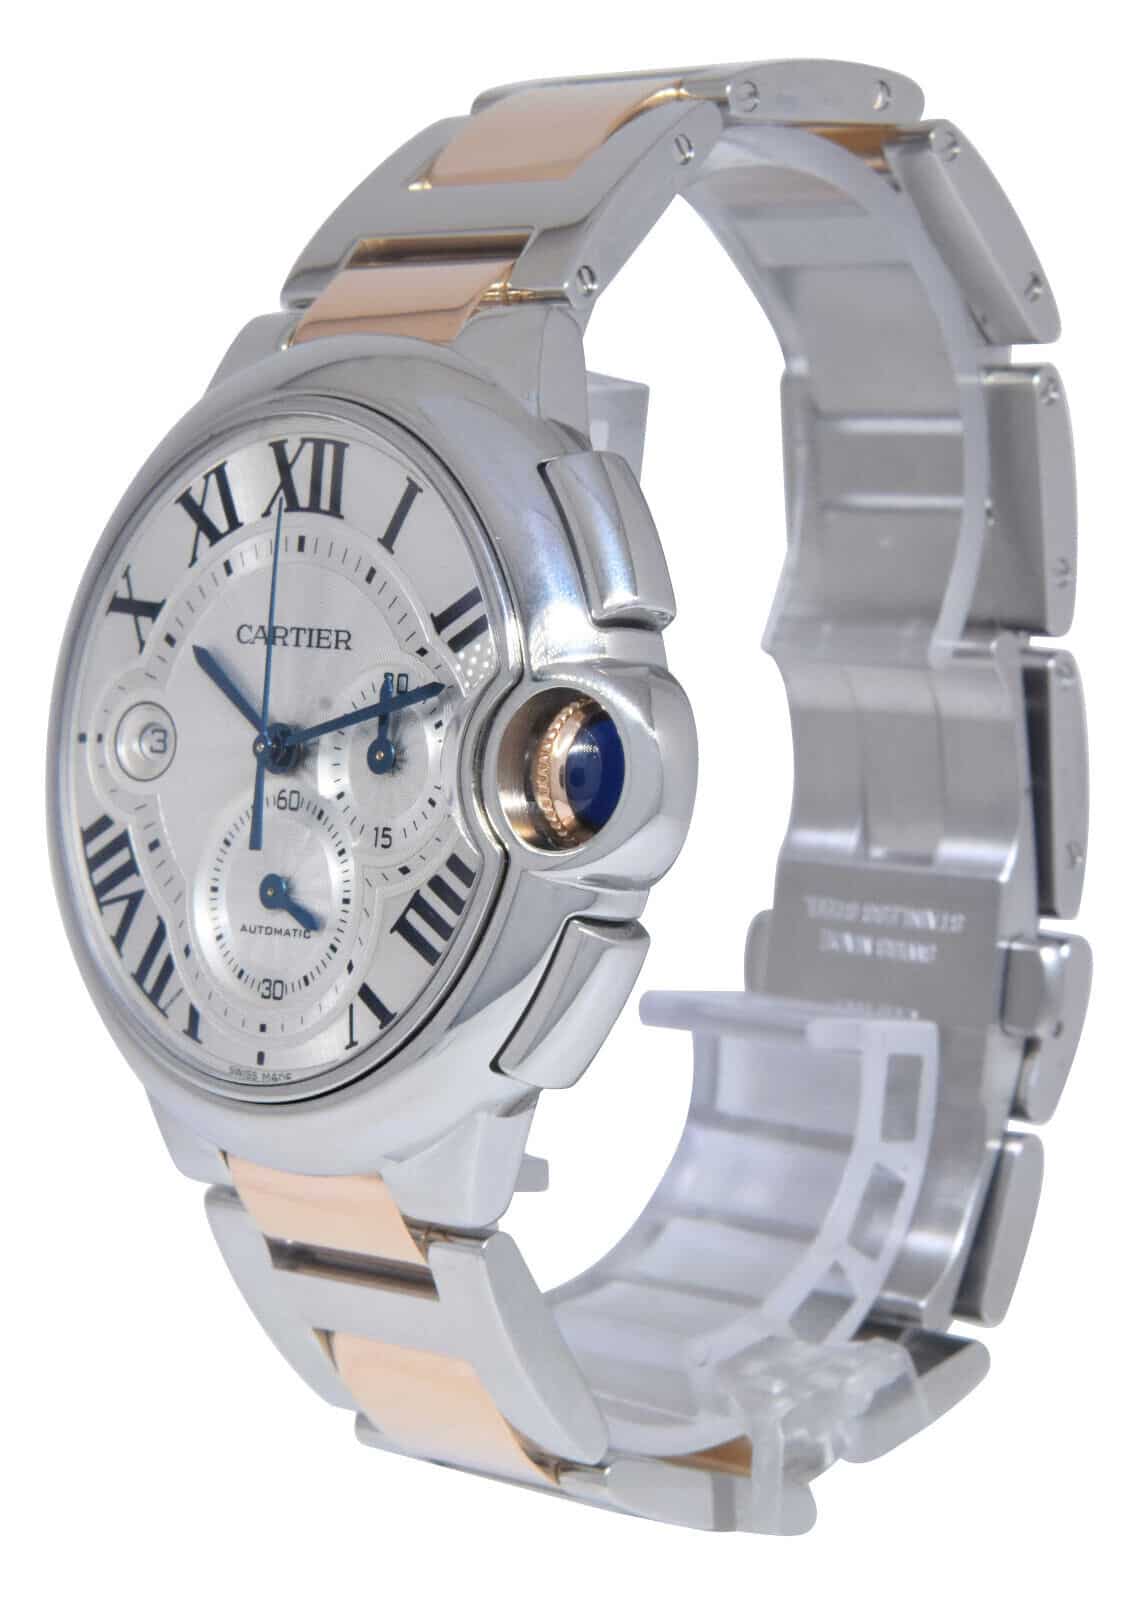 Cartier Ballon Bleu XL 44mm Chronograph 18K Rose Gold/Steel Watch W6920063  3109 - Jewels in Time